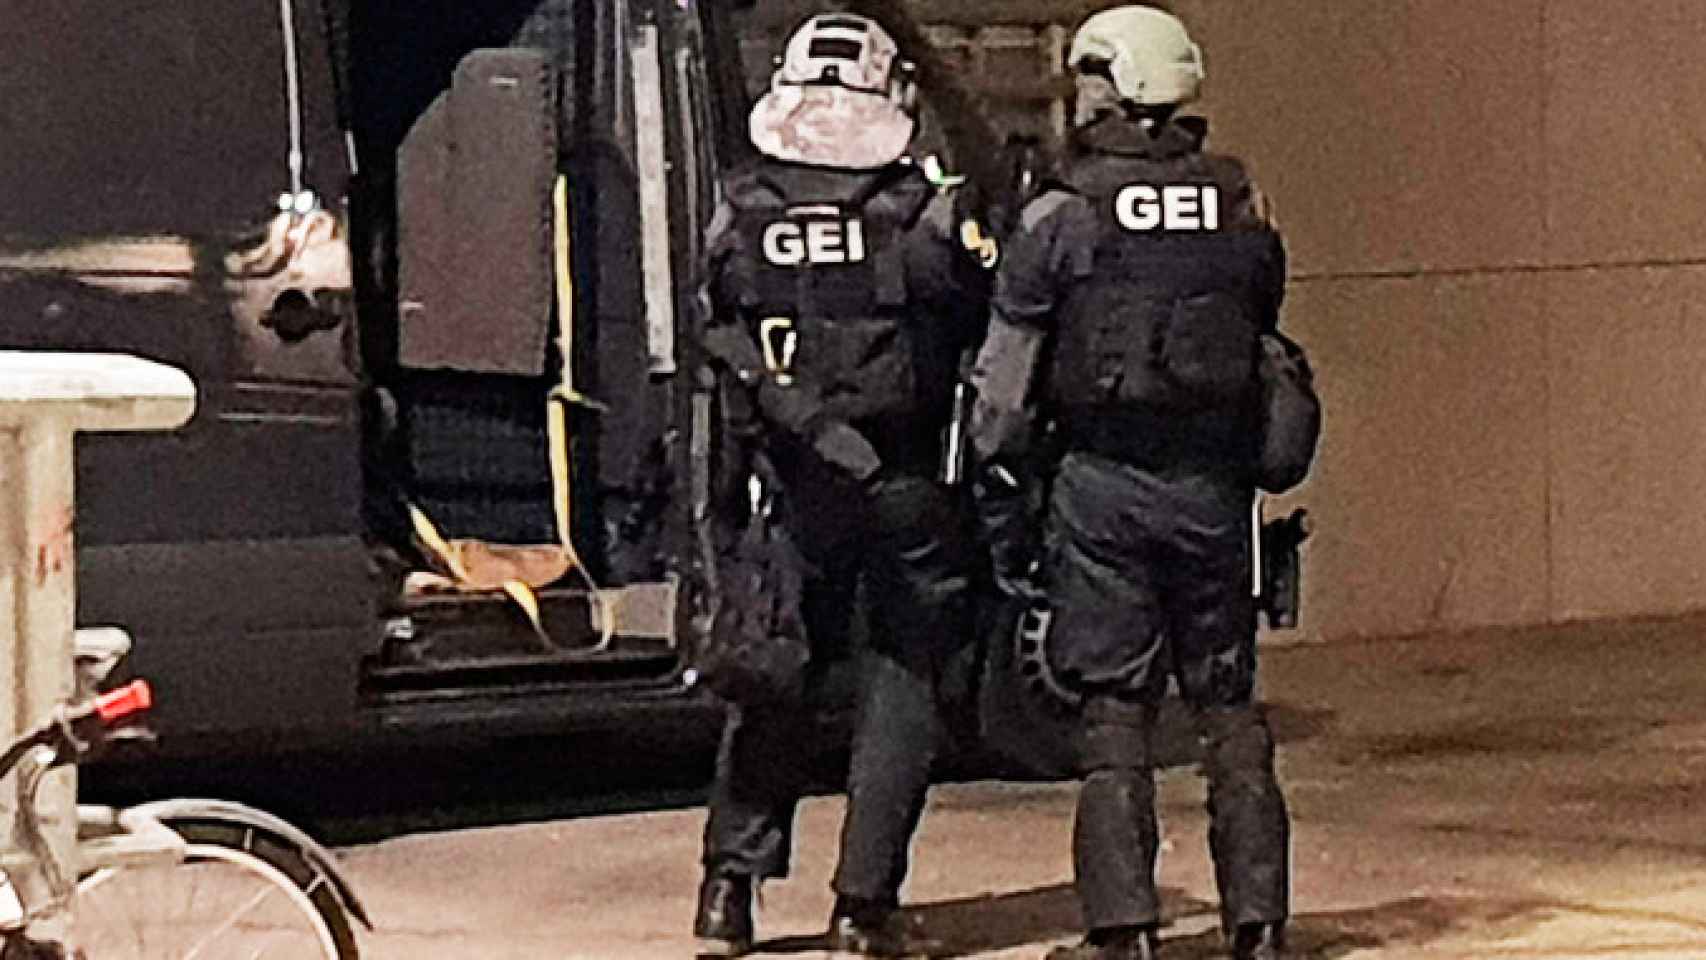 Dos agentes de los Mossos d'Esquadra en una operación antiterrorista / MOSSOS